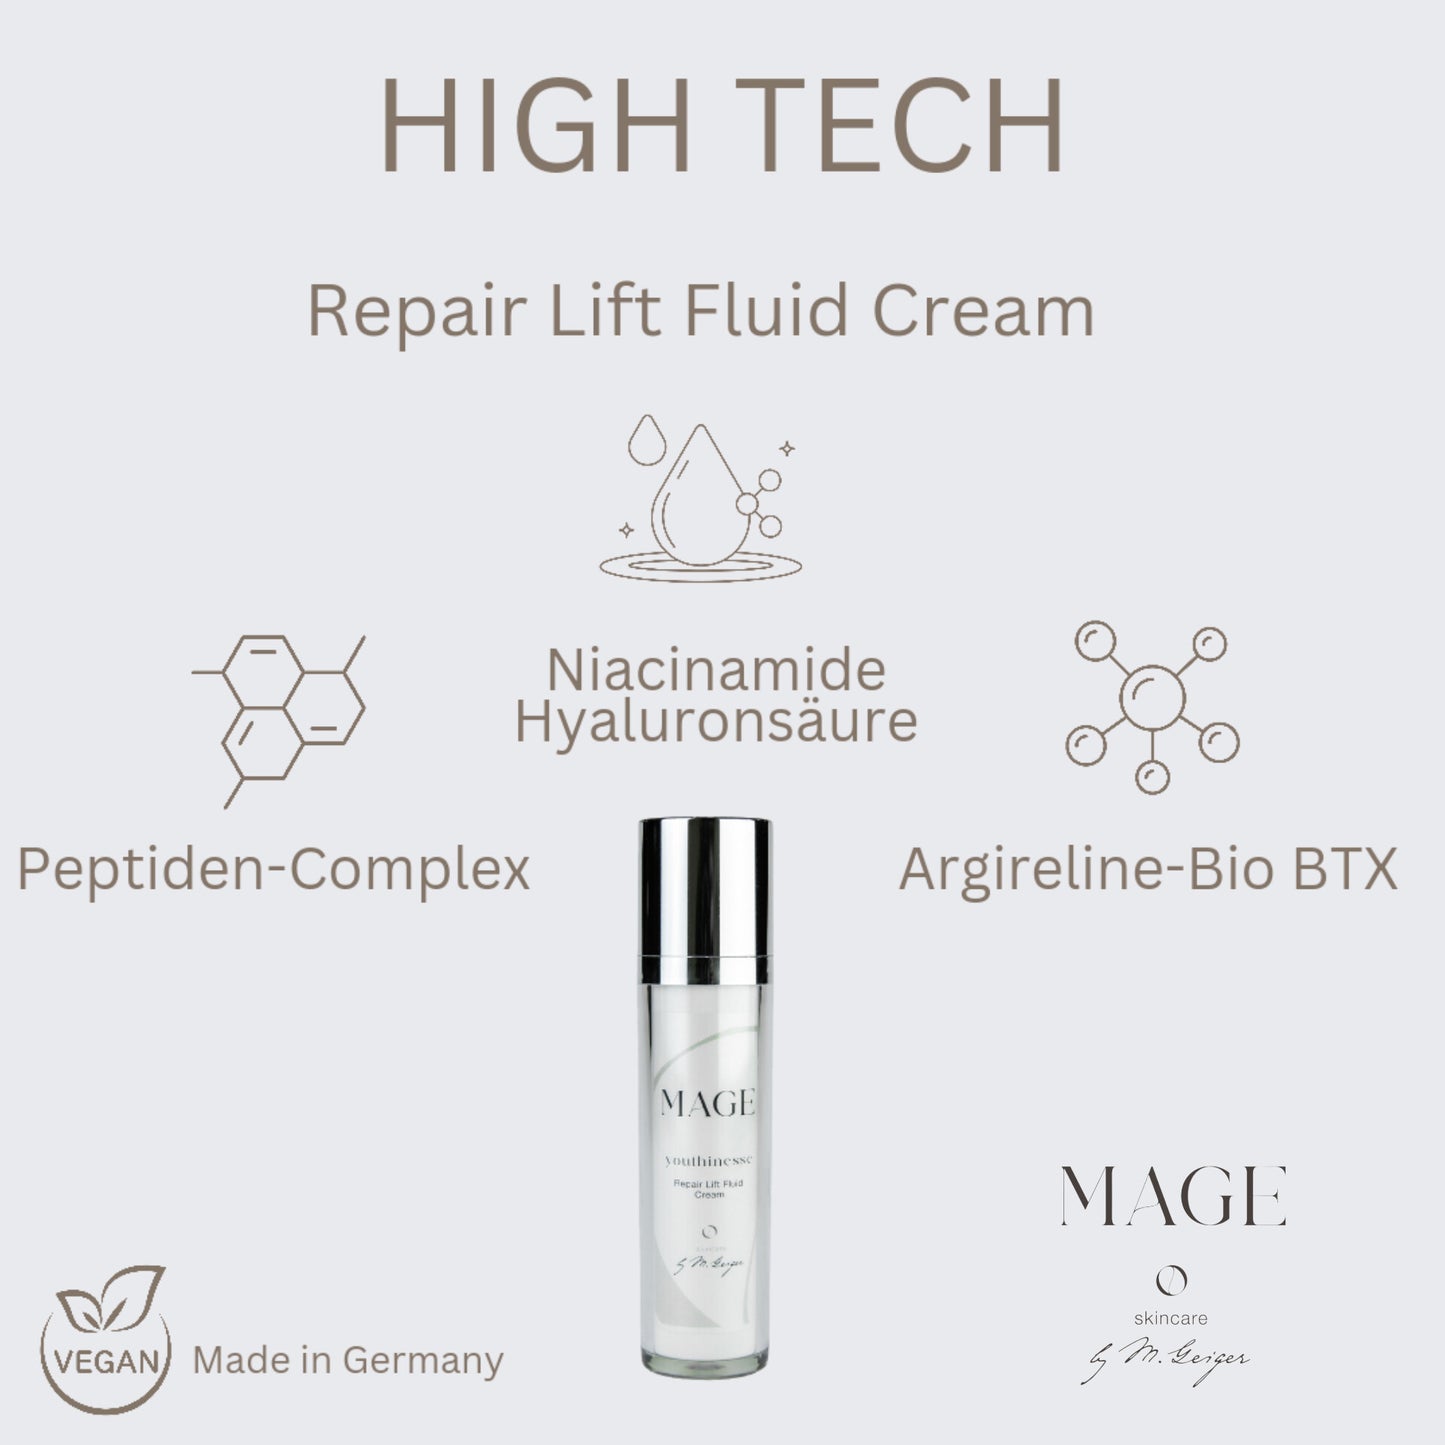 Repair Lift Fluid Cream verleiht Glow repariert Hautzellen mit Vitaminen und reduziert Falten mit Bio BTX, für alle Hauttypen